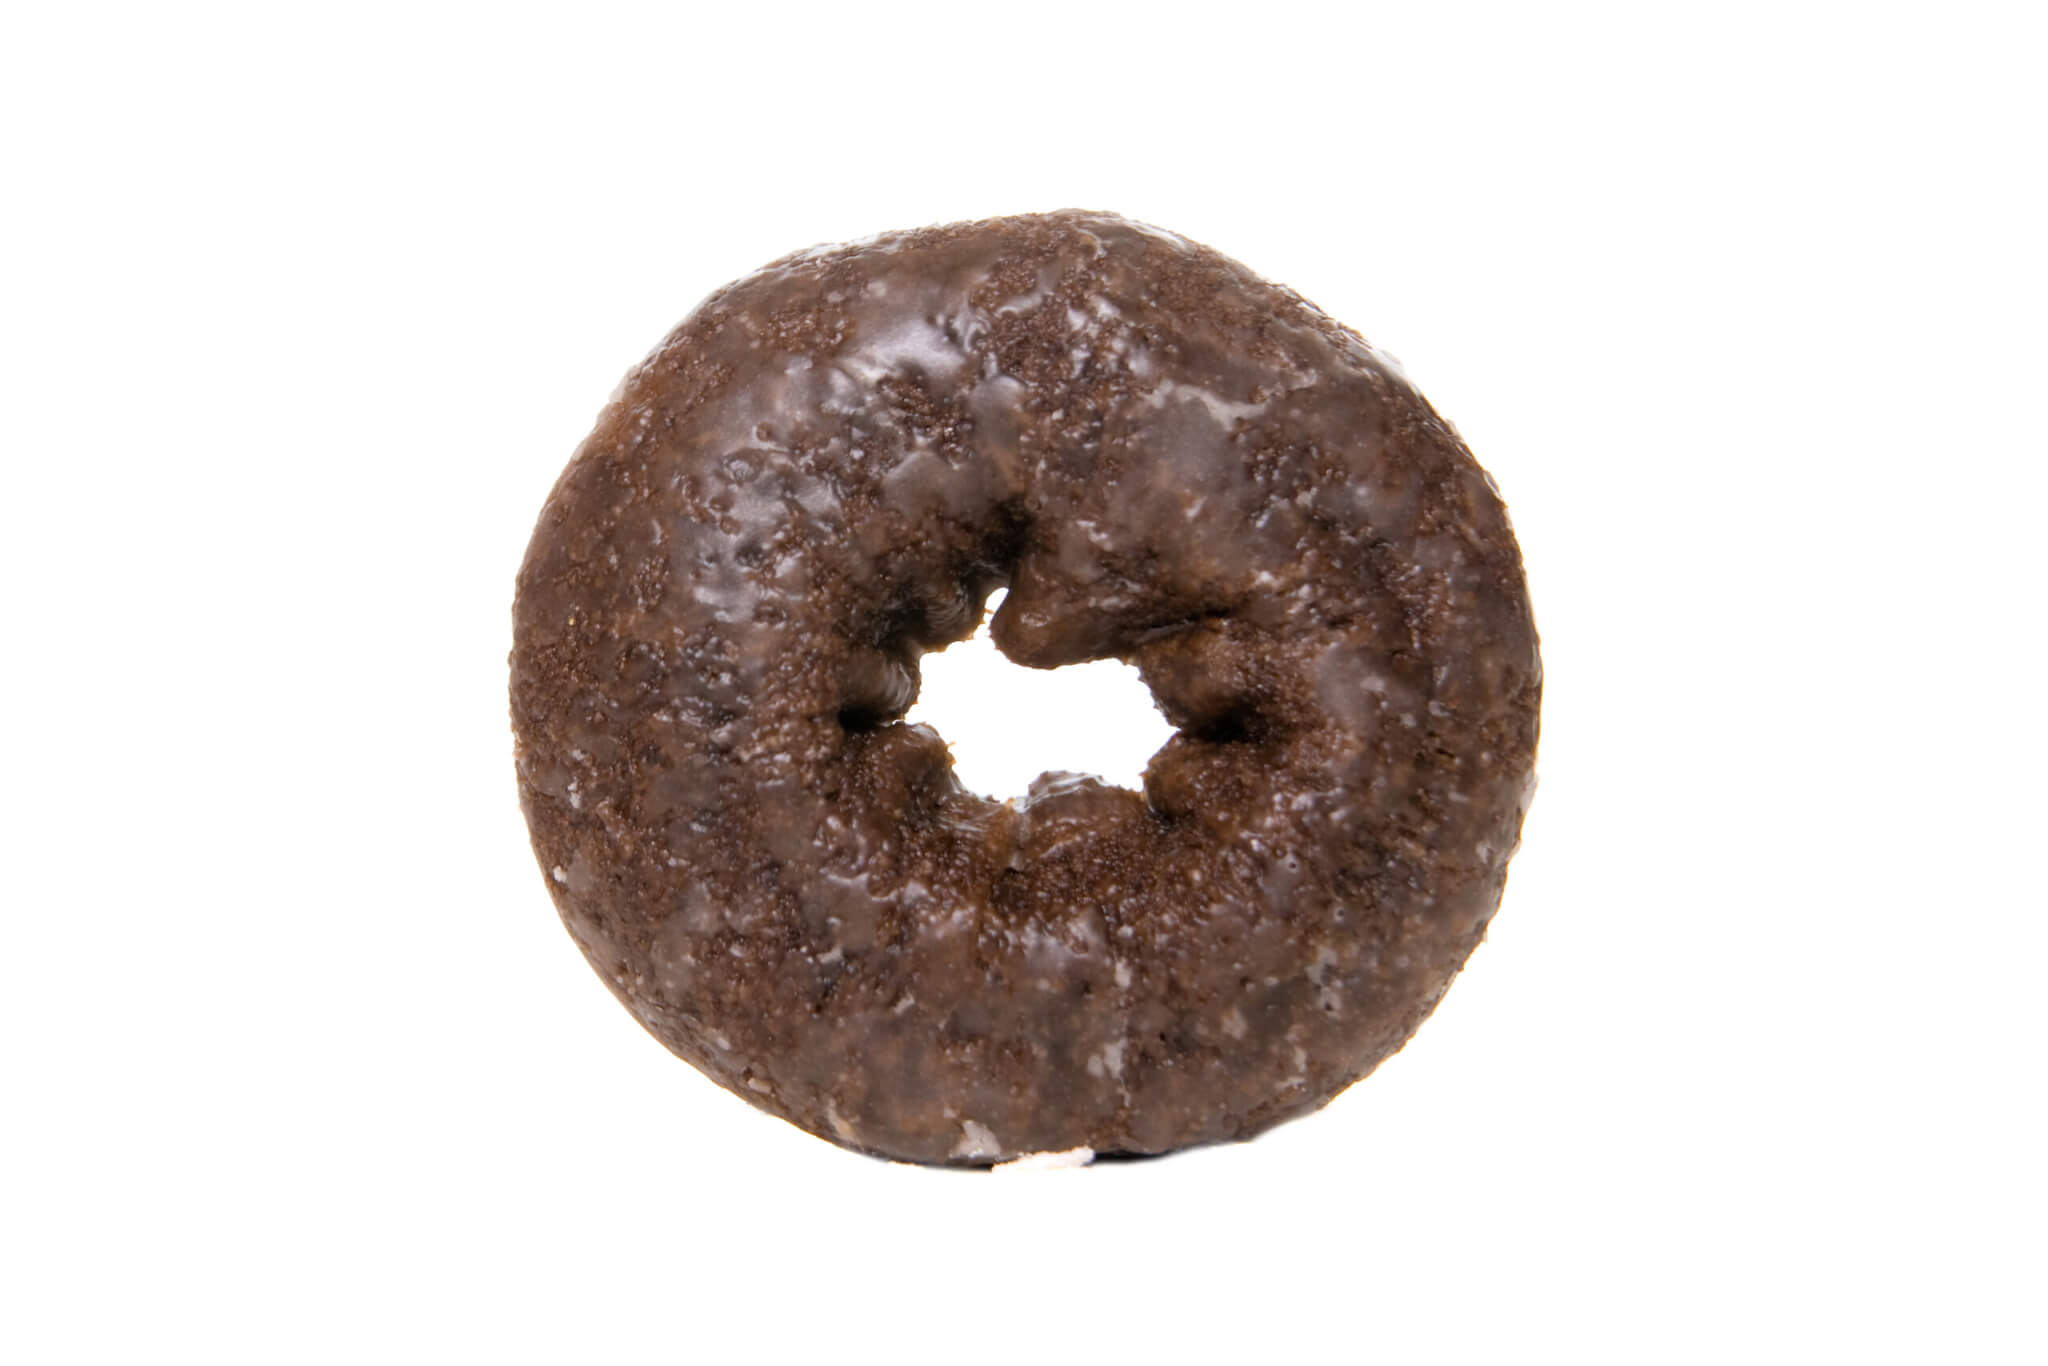 Chocolate glazed donut